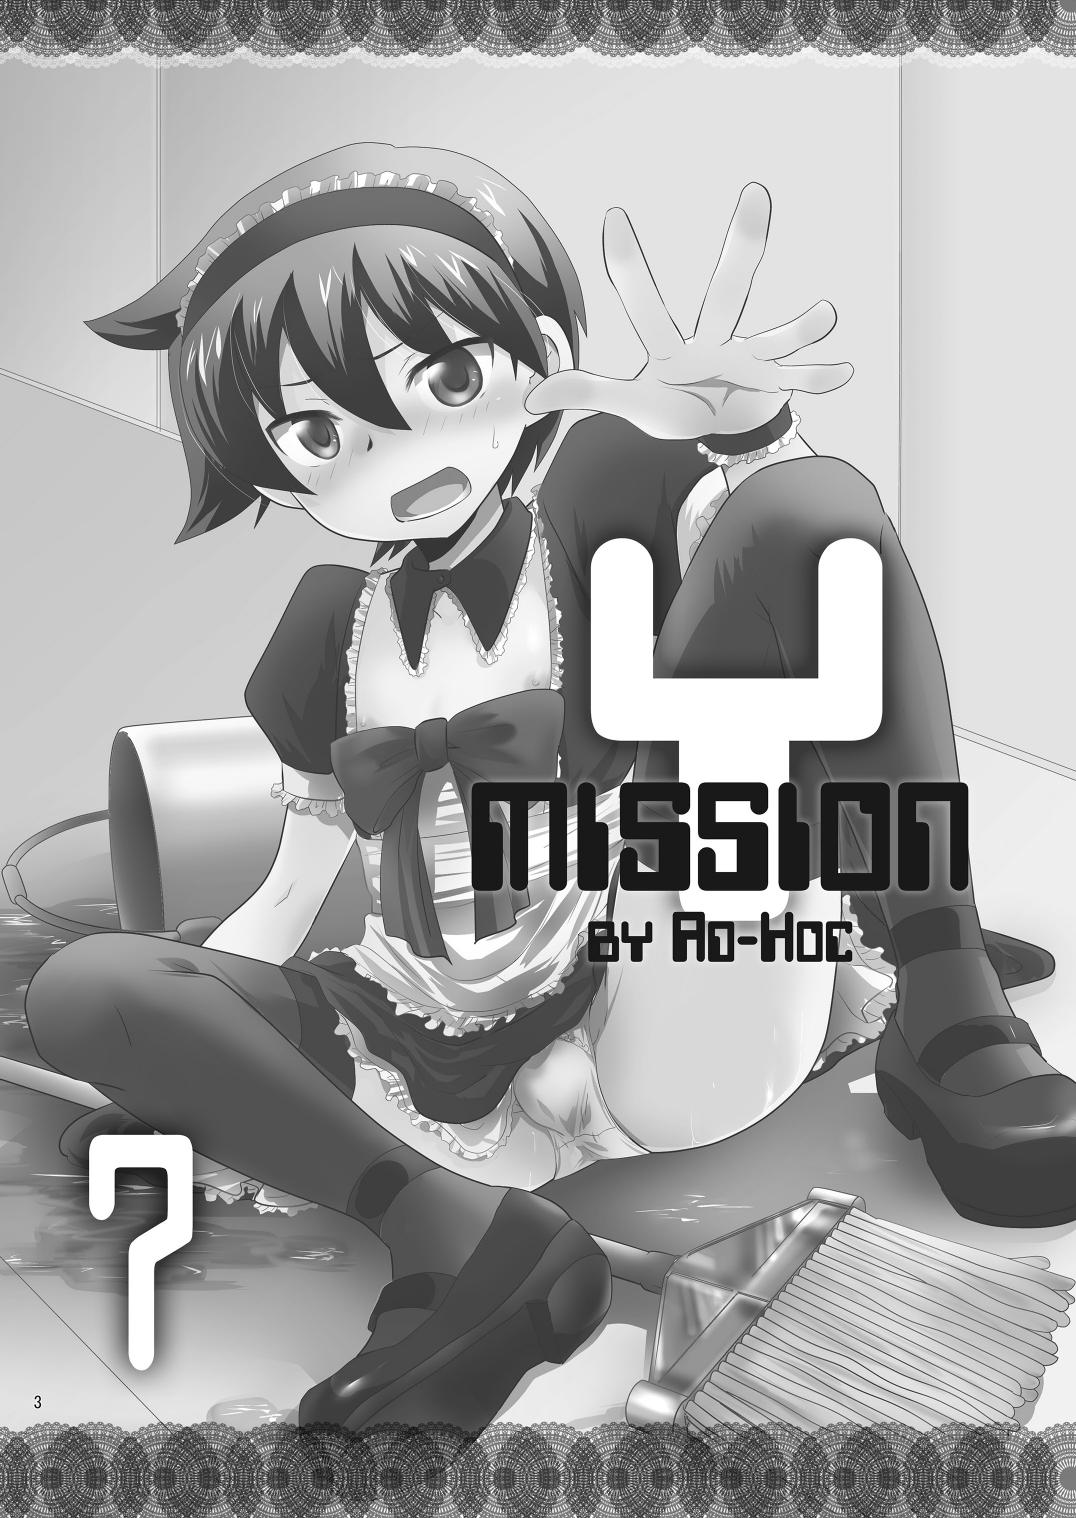 Mission Y7 1